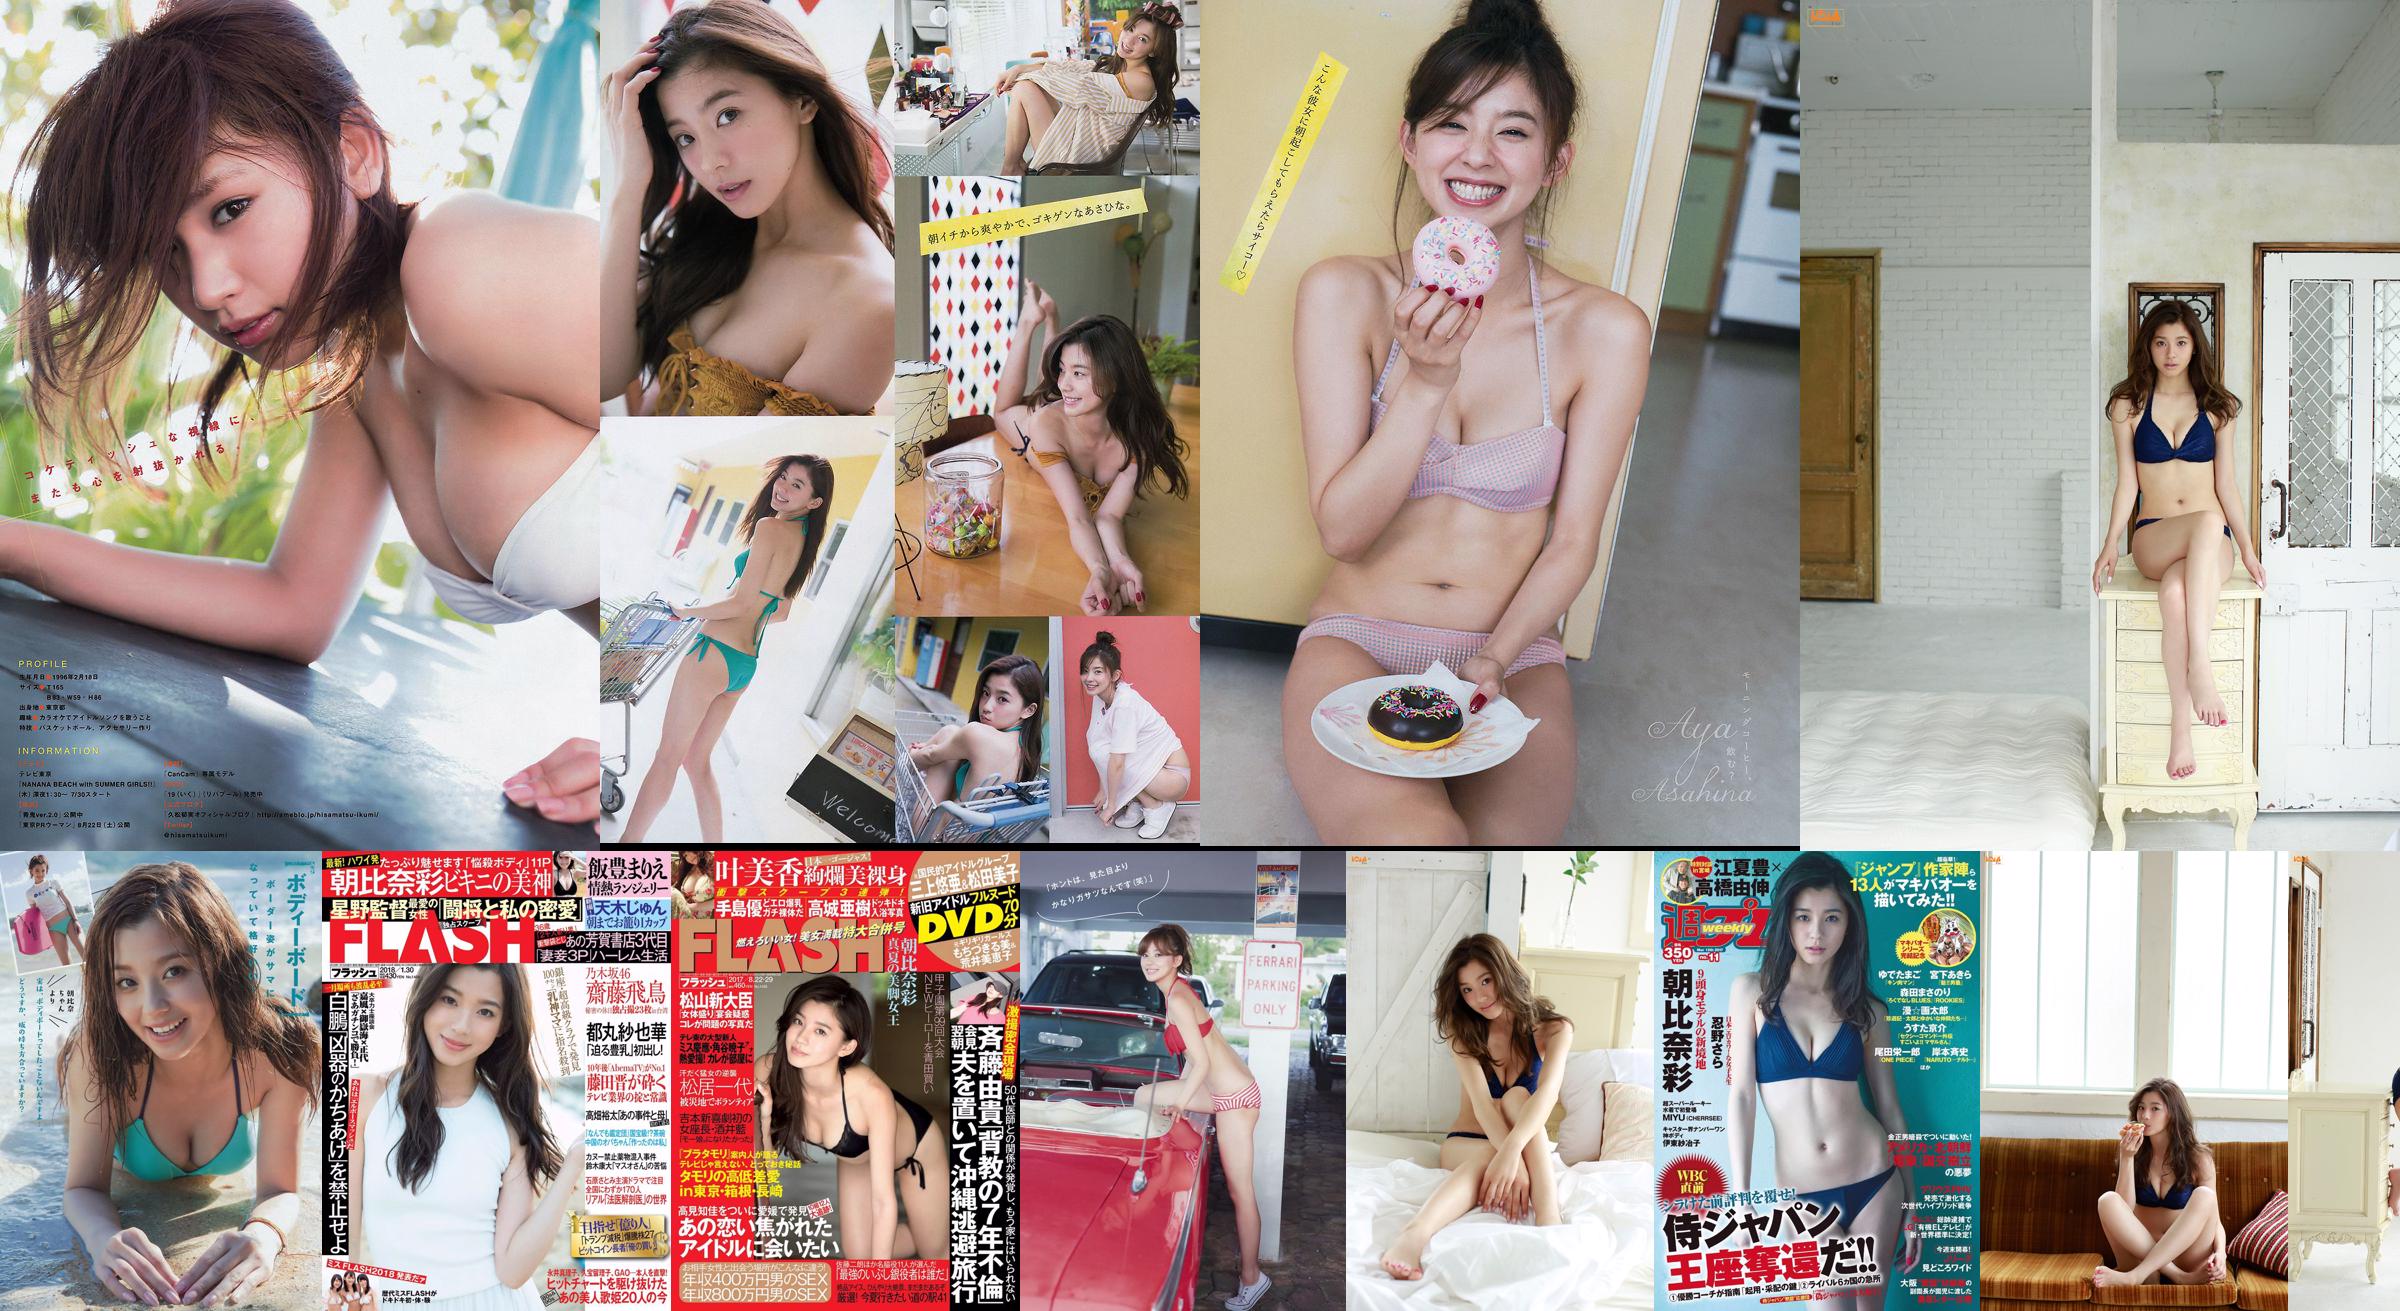 [FLASH] Aya Asahina Haruna Kawaguchi Ruri Ena Mina Asakura 27.10.2015 Foto Moshi No.fda2f7 Seite 1